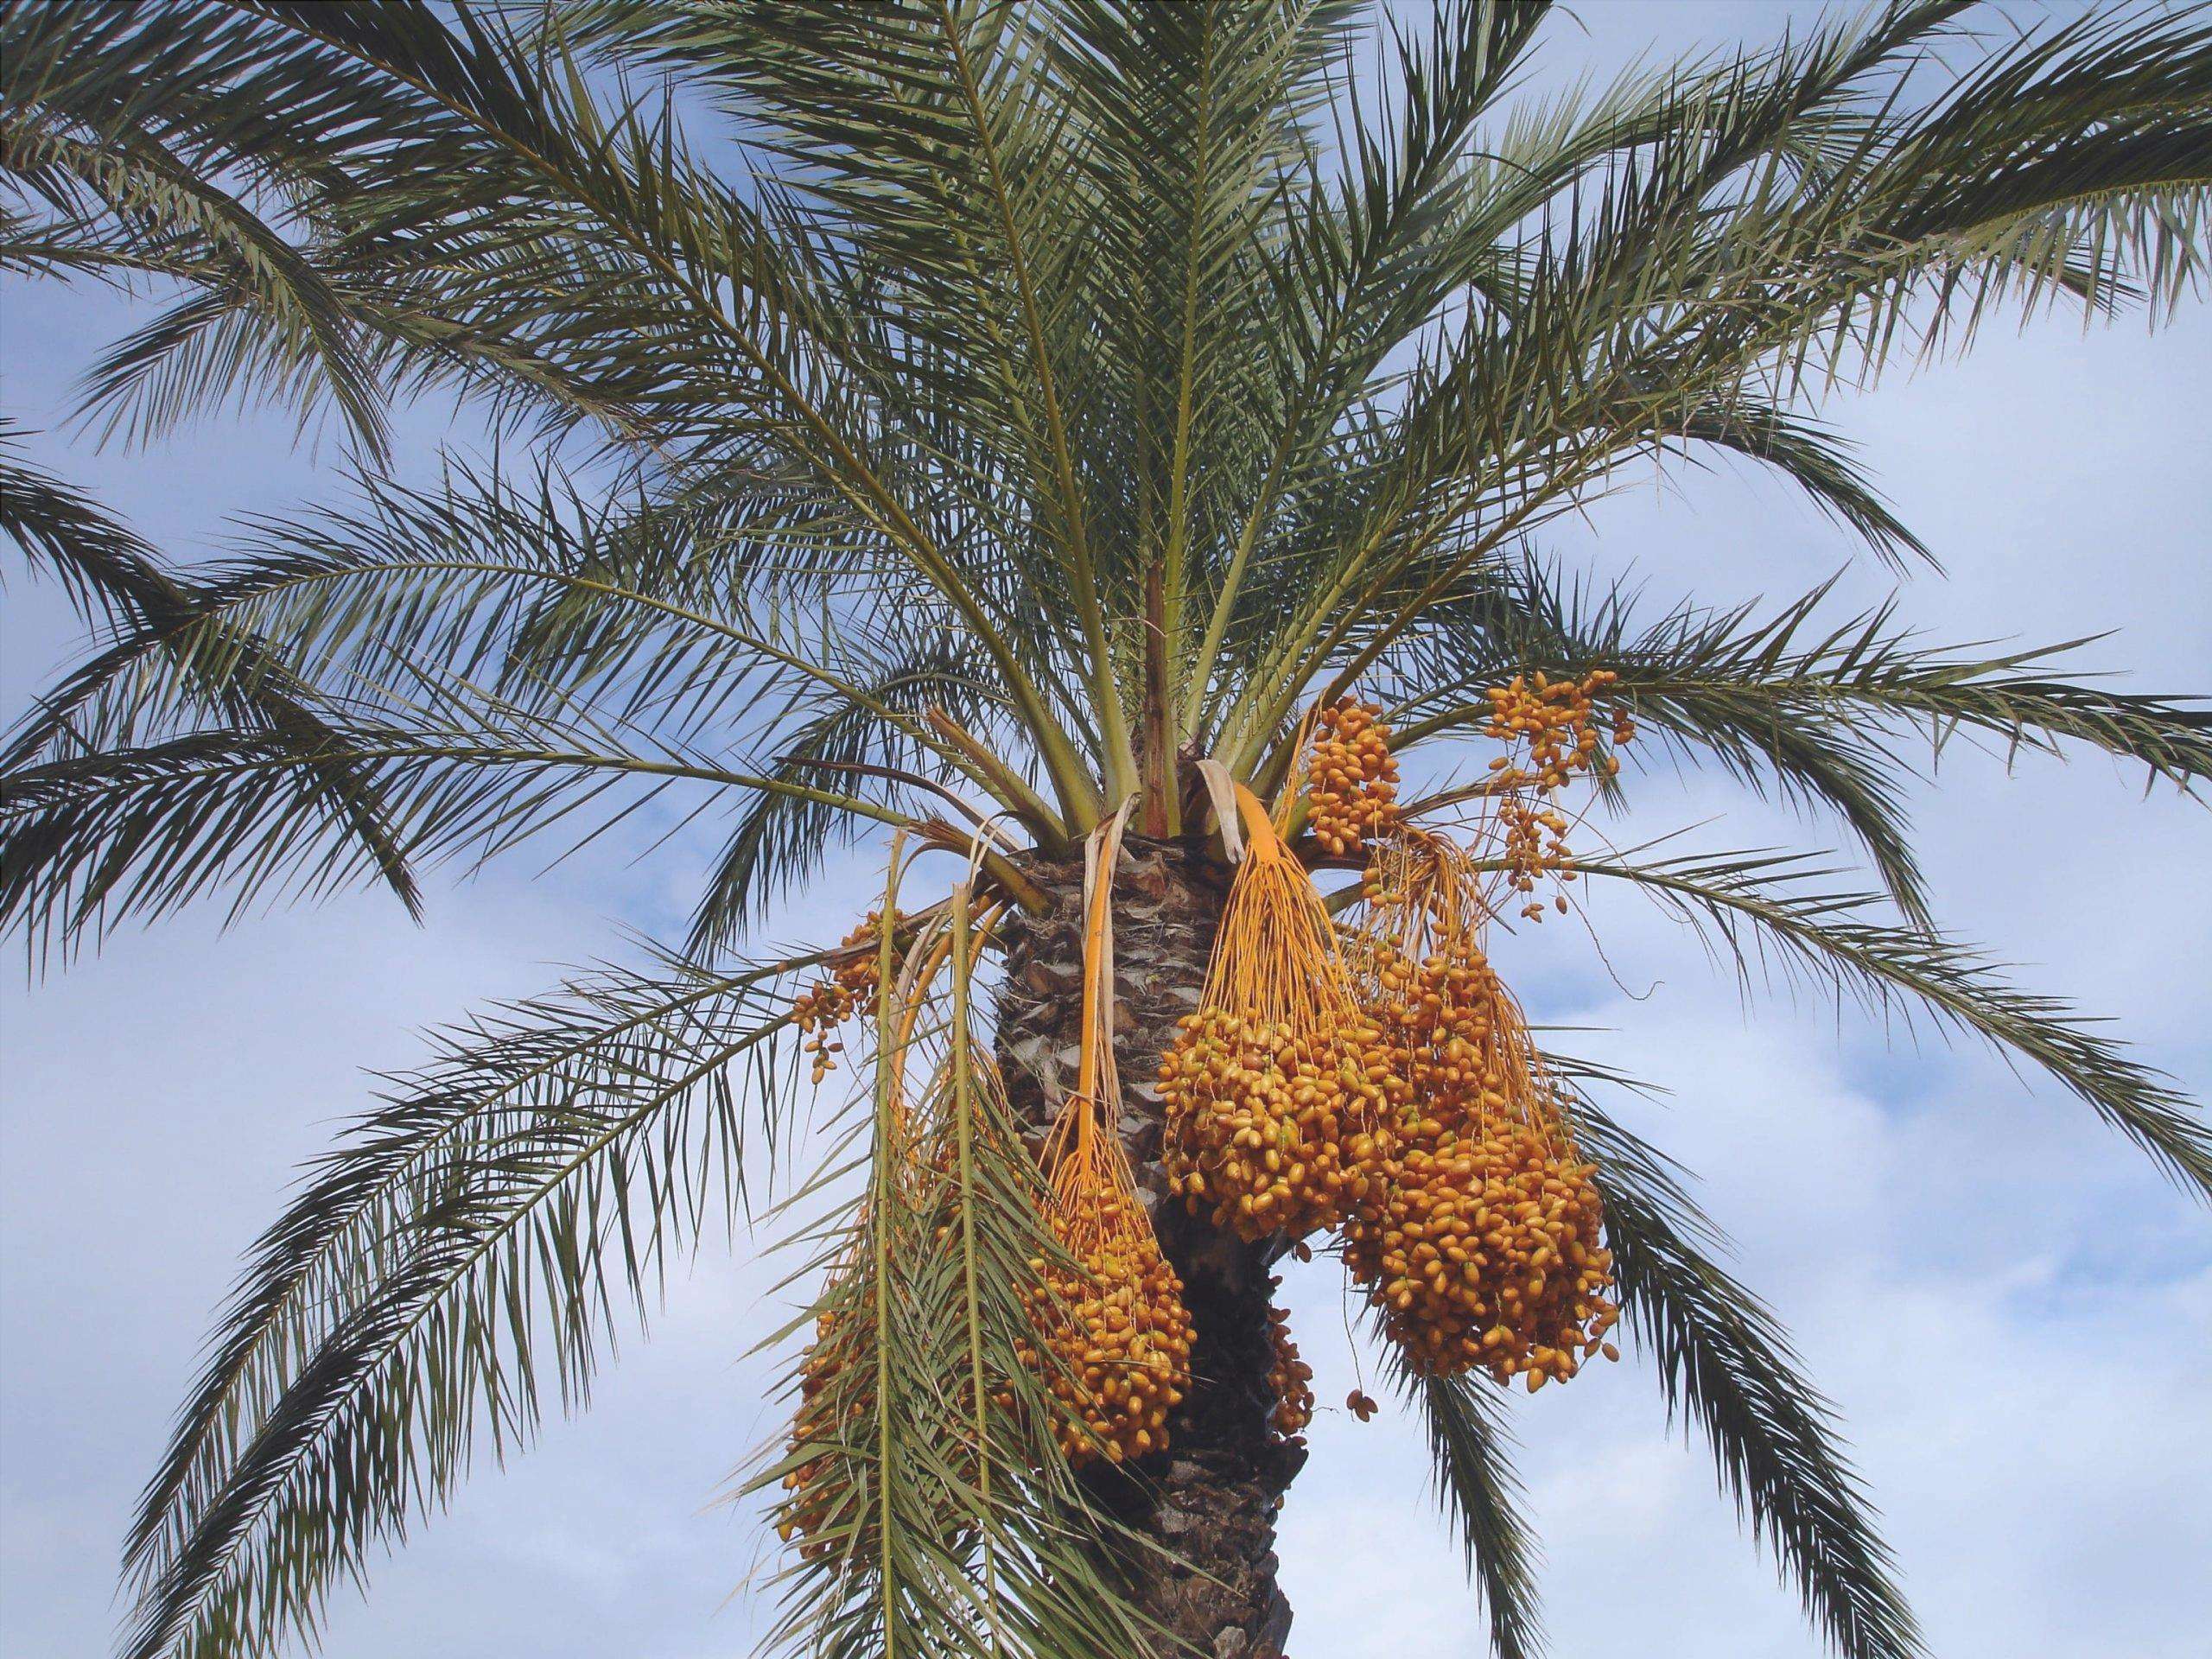 La palma da dattero è una palma che produce datteri commestibili.